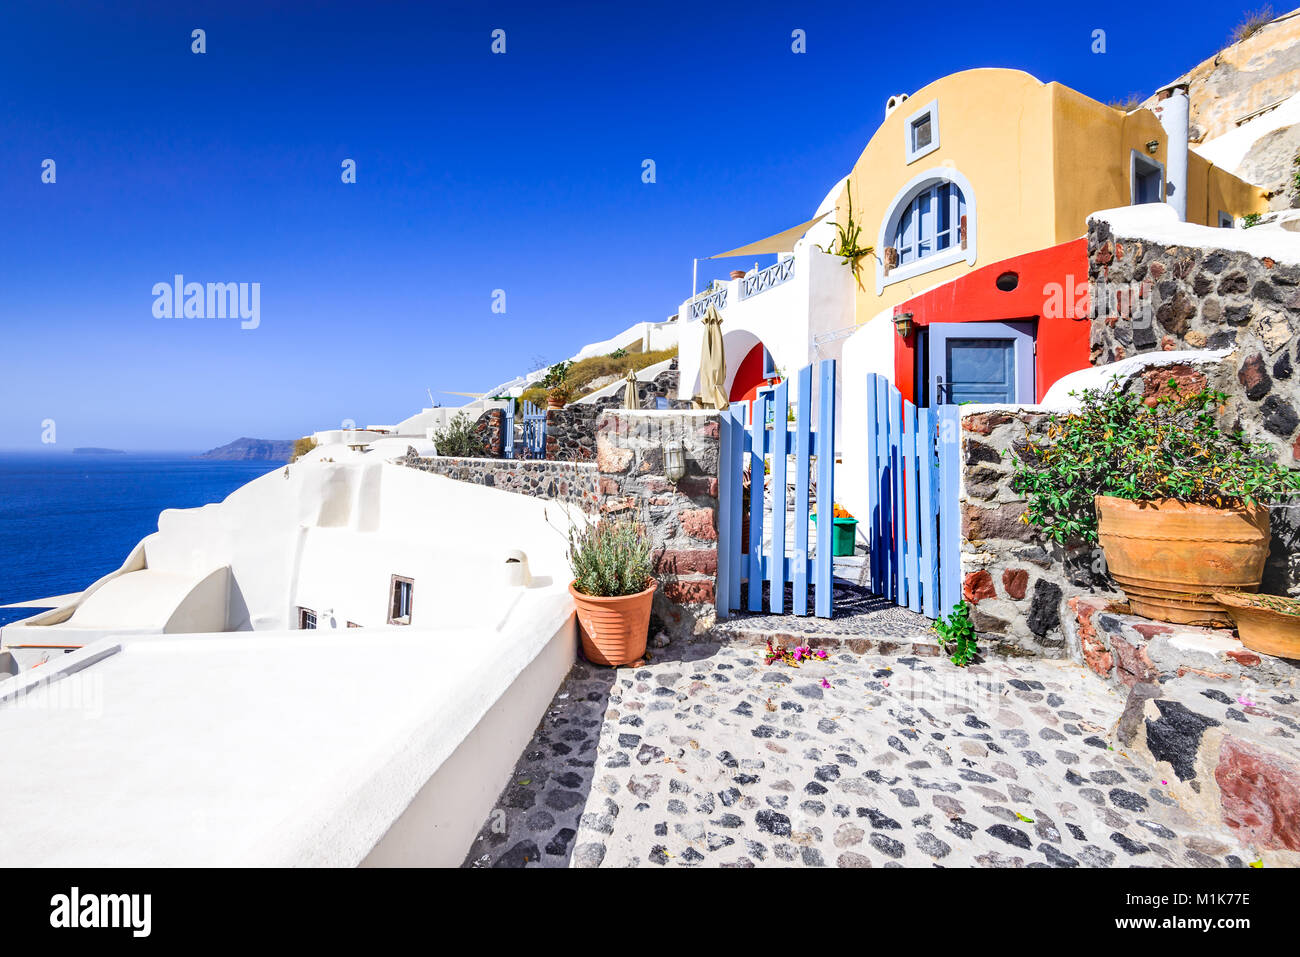 Oia, SANTORINI - Grecia. Famosa atracción del pueblo blanco con calles empedradas y casas de colores, el griego de las islas Cícladas, del mar Egeo. Foto de stock